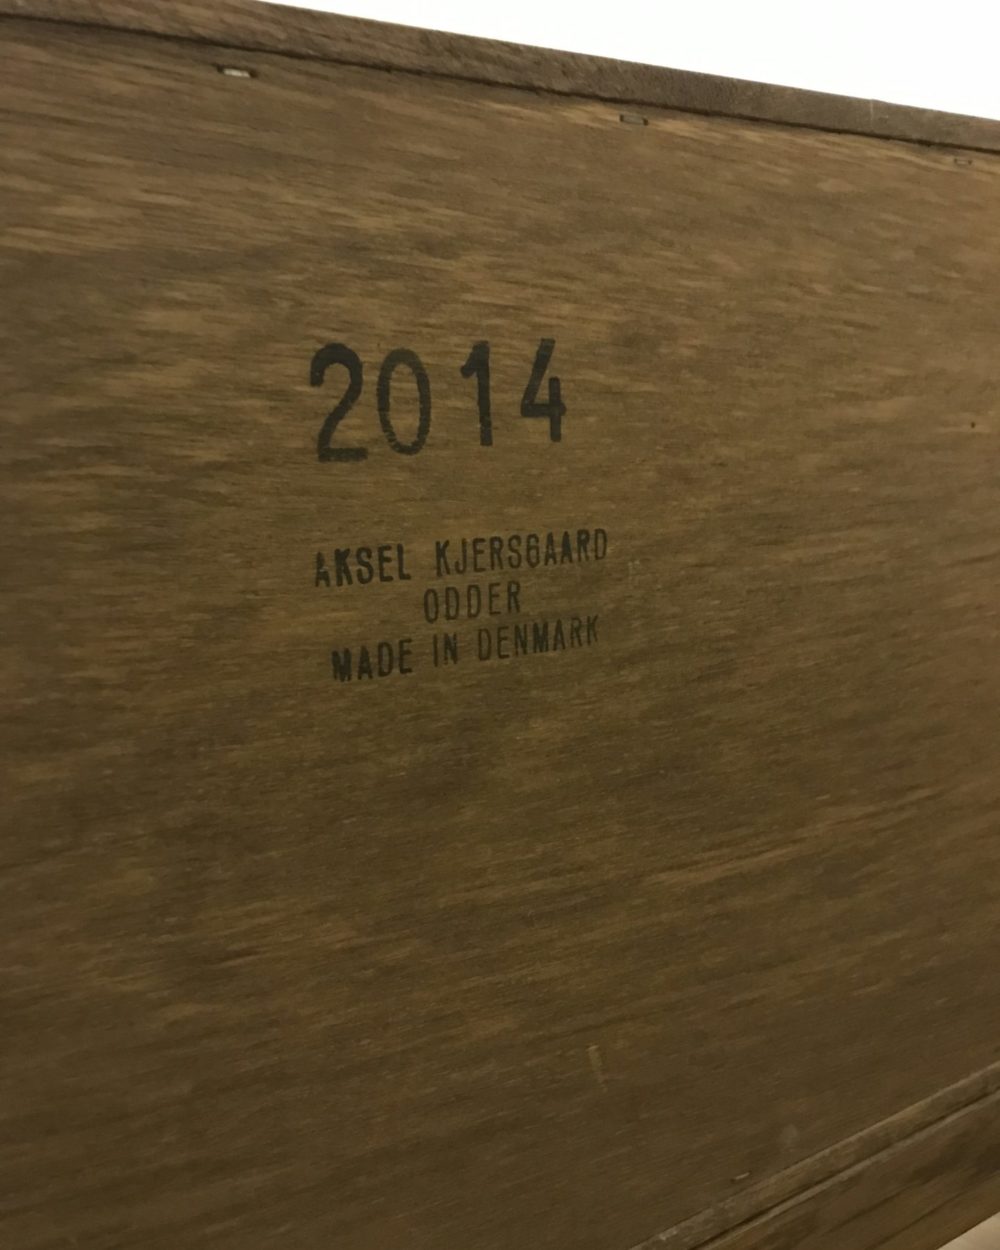 Sideboard Aksel Kjersgaard enfilade vintchy brocante en ligne vintage et design en suisse geneve